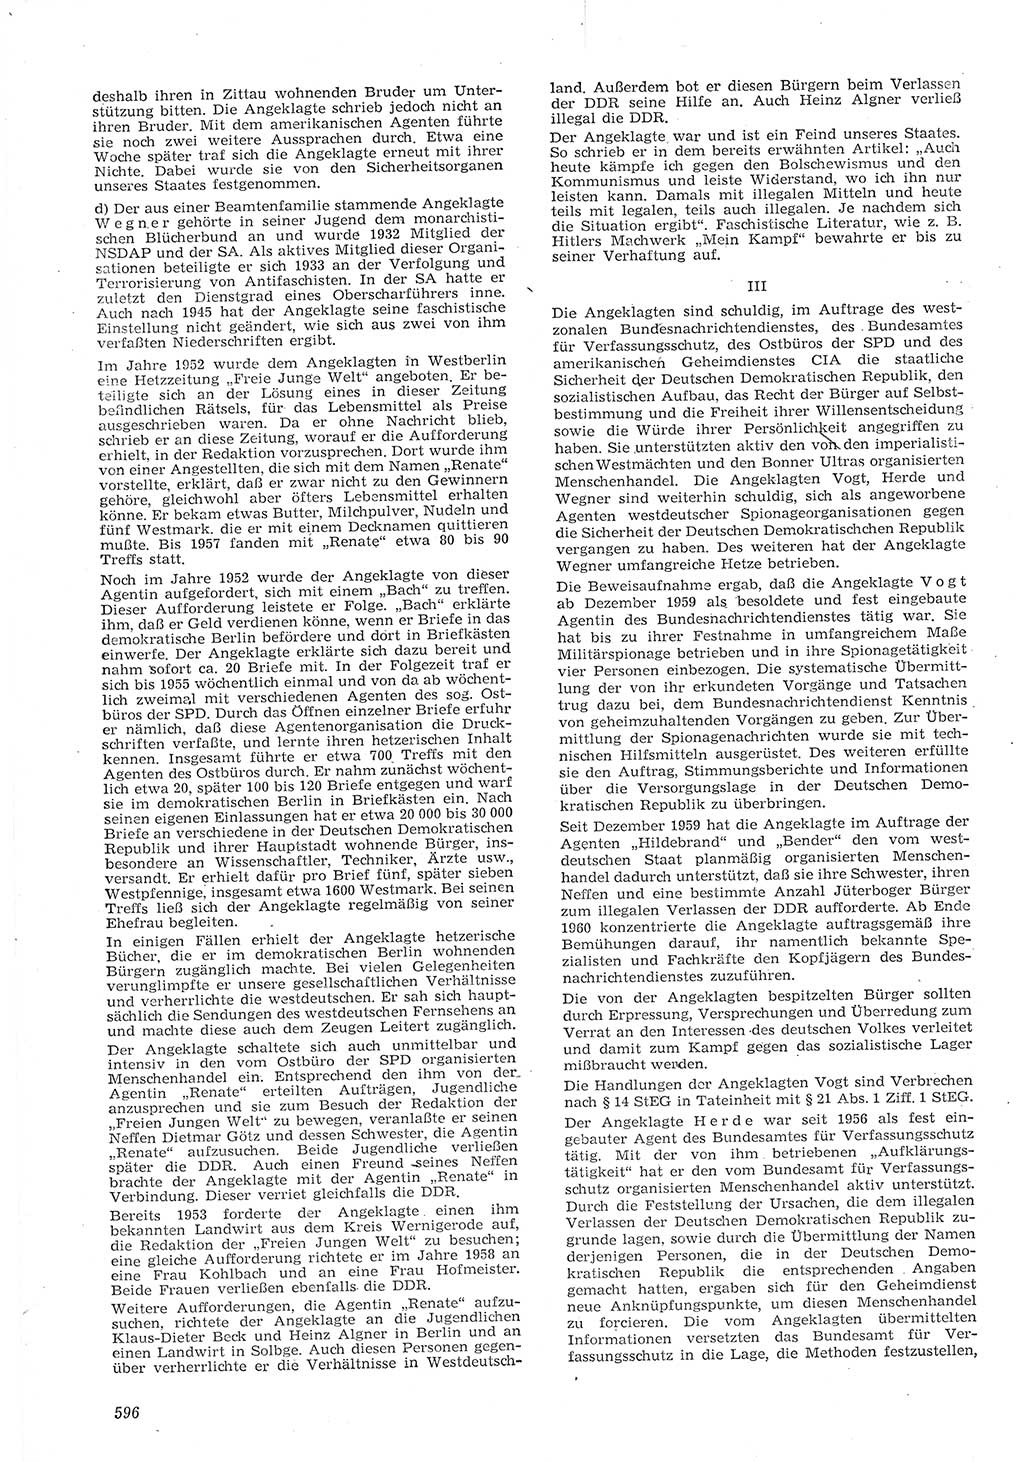 Neue Justiz (NJ), Zeitschrift für Recht und Rechtswissenschaft [Deutsche Demokratische Republik (DDR)], 15. Jahrgang 1961, Seite 596 (NJ DDR 1961, S. 596)